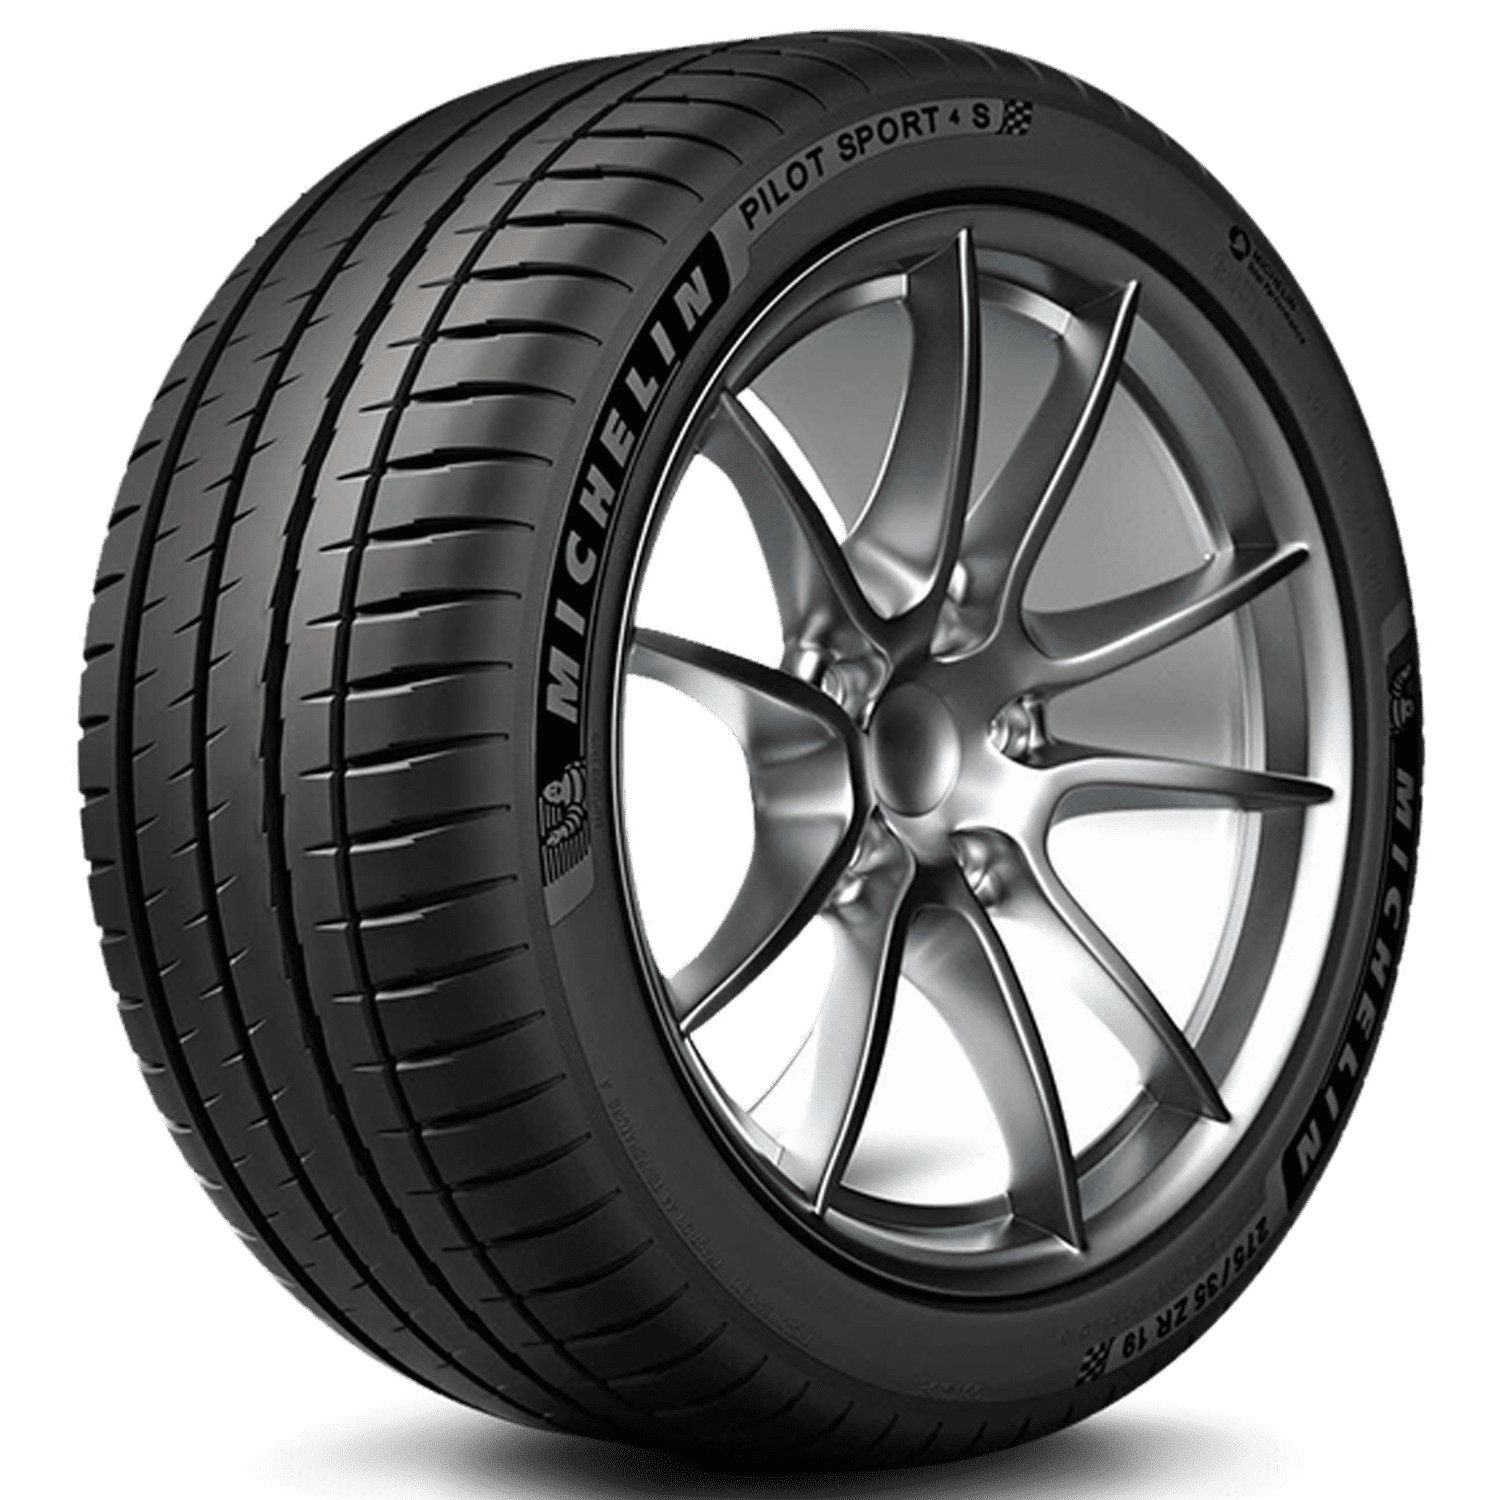 Michelin 235/40-18 4 Tire Pilot S 95 Sport Y